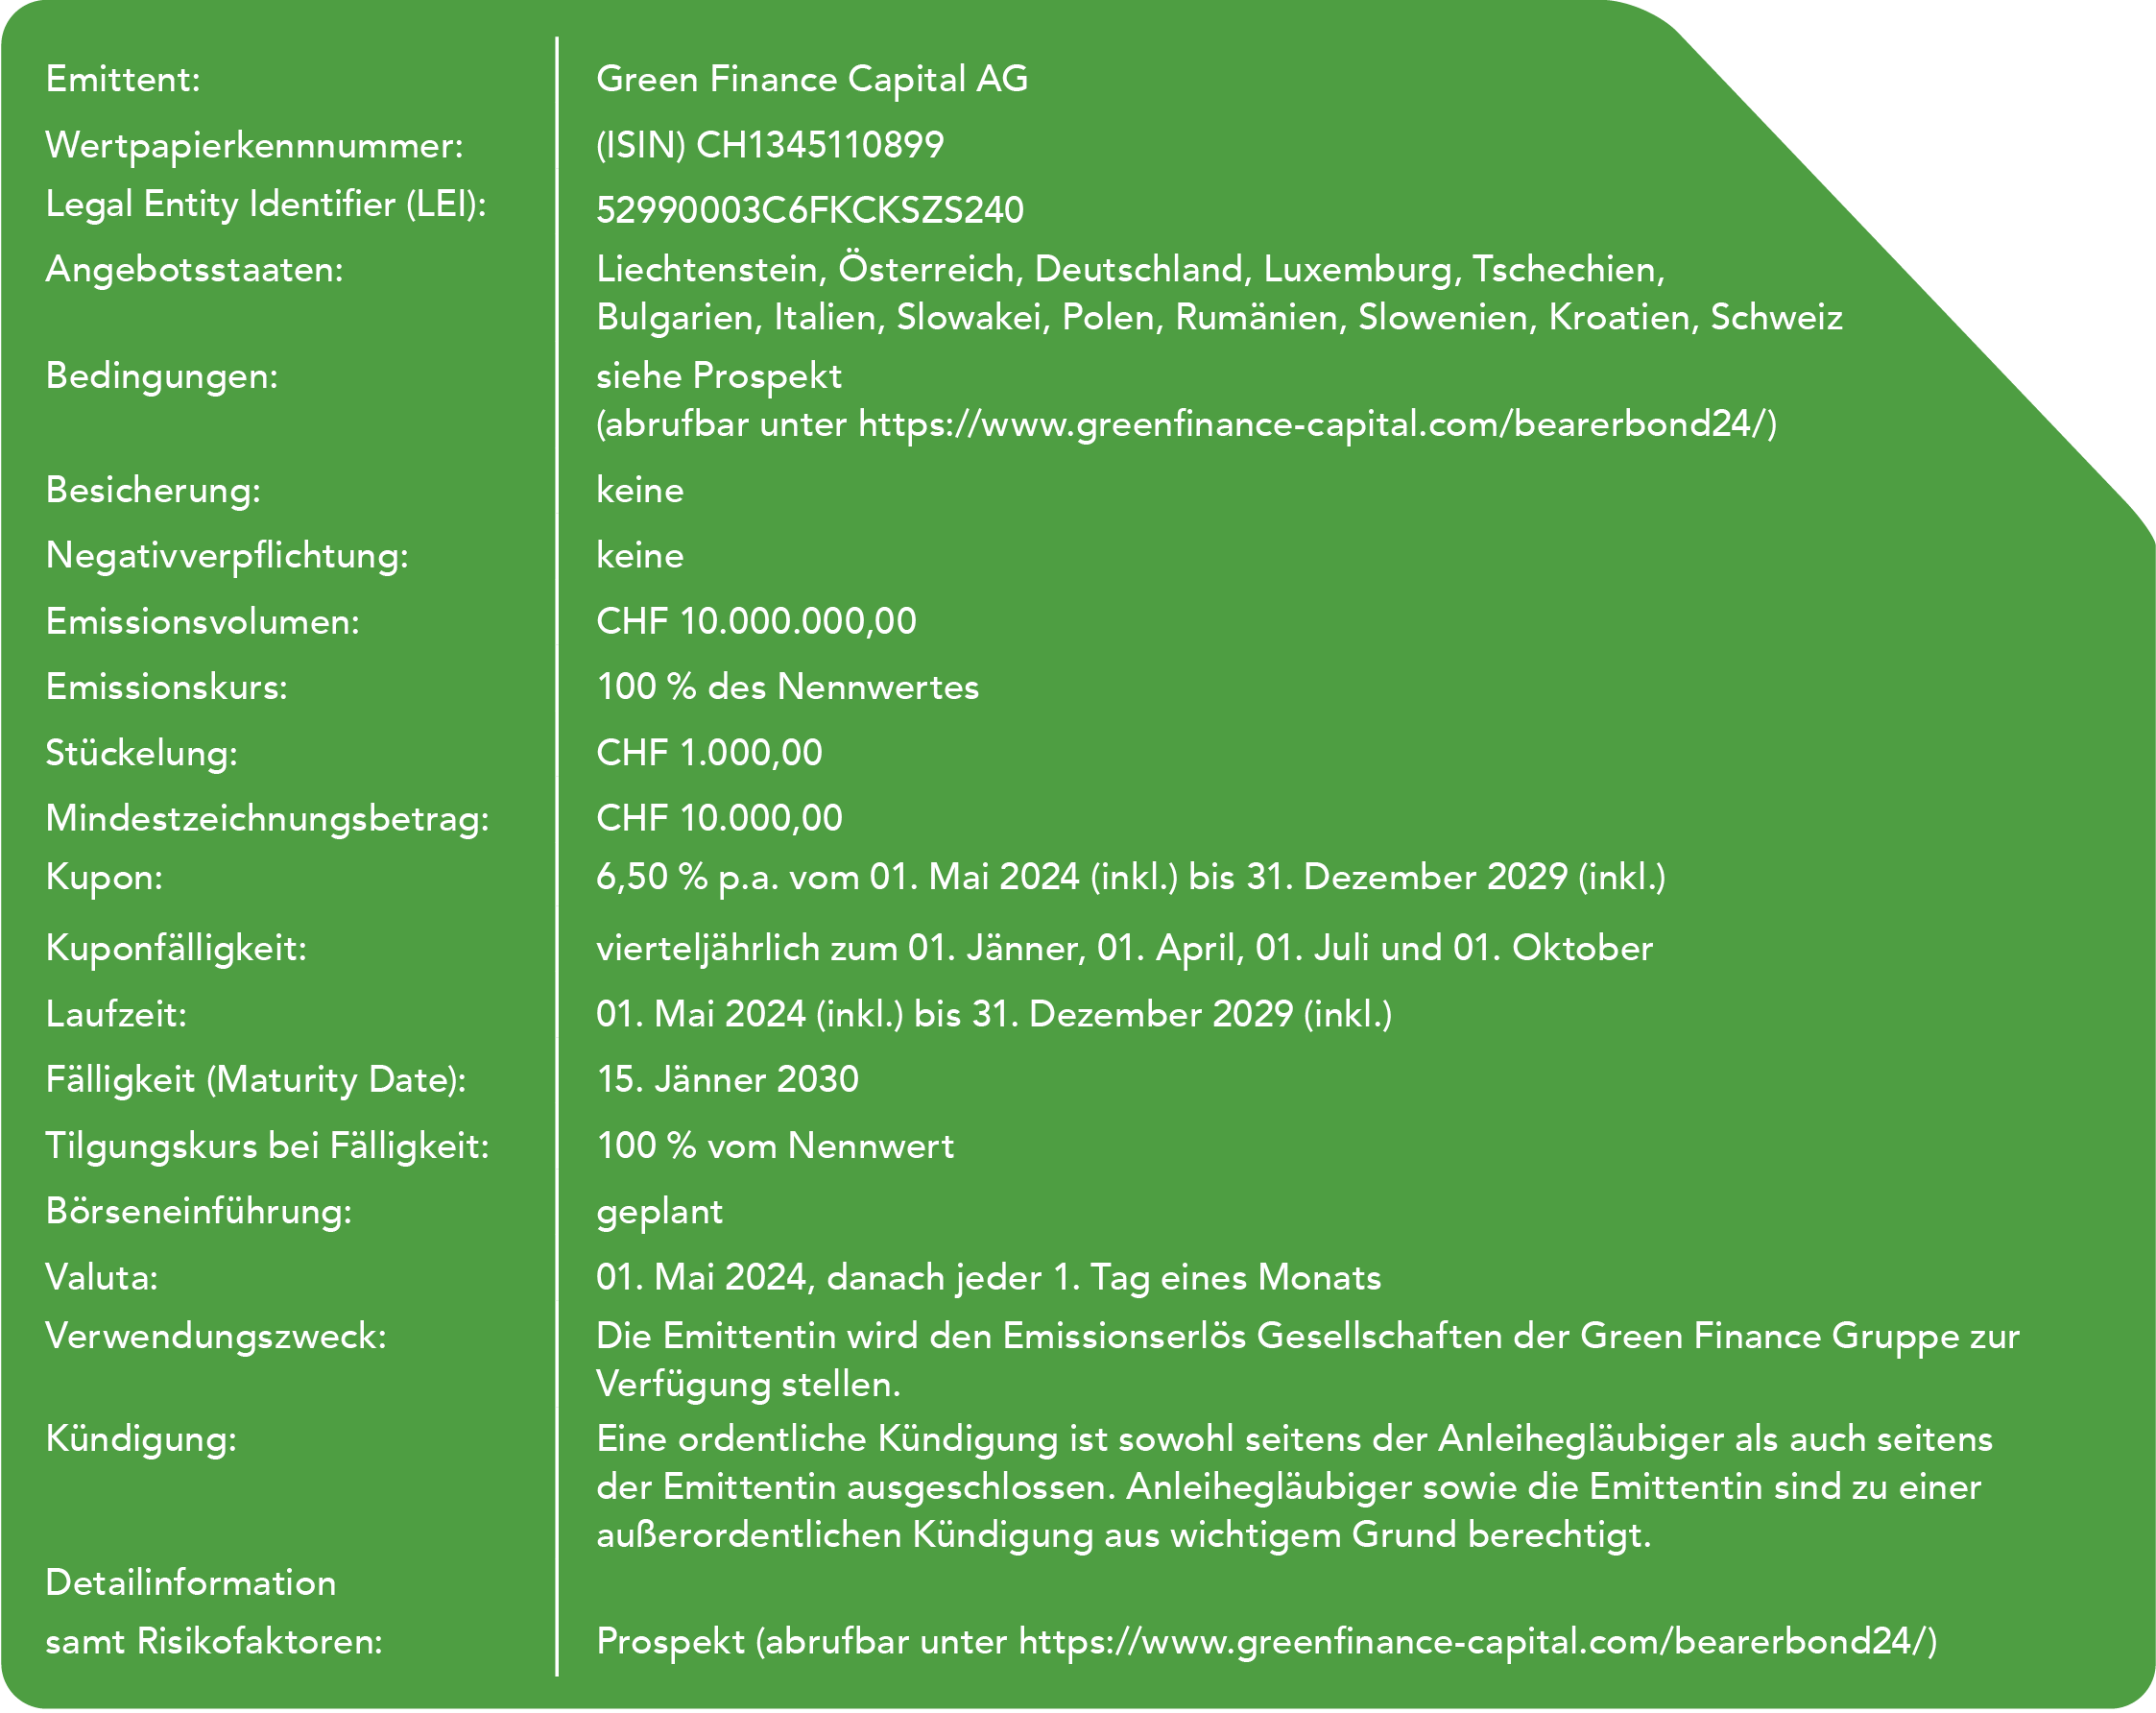 Fakten zum Green Finance Capital Bearer Bond 2024 - nähere Information sind in der Beschreibung des Bildes zu finden.